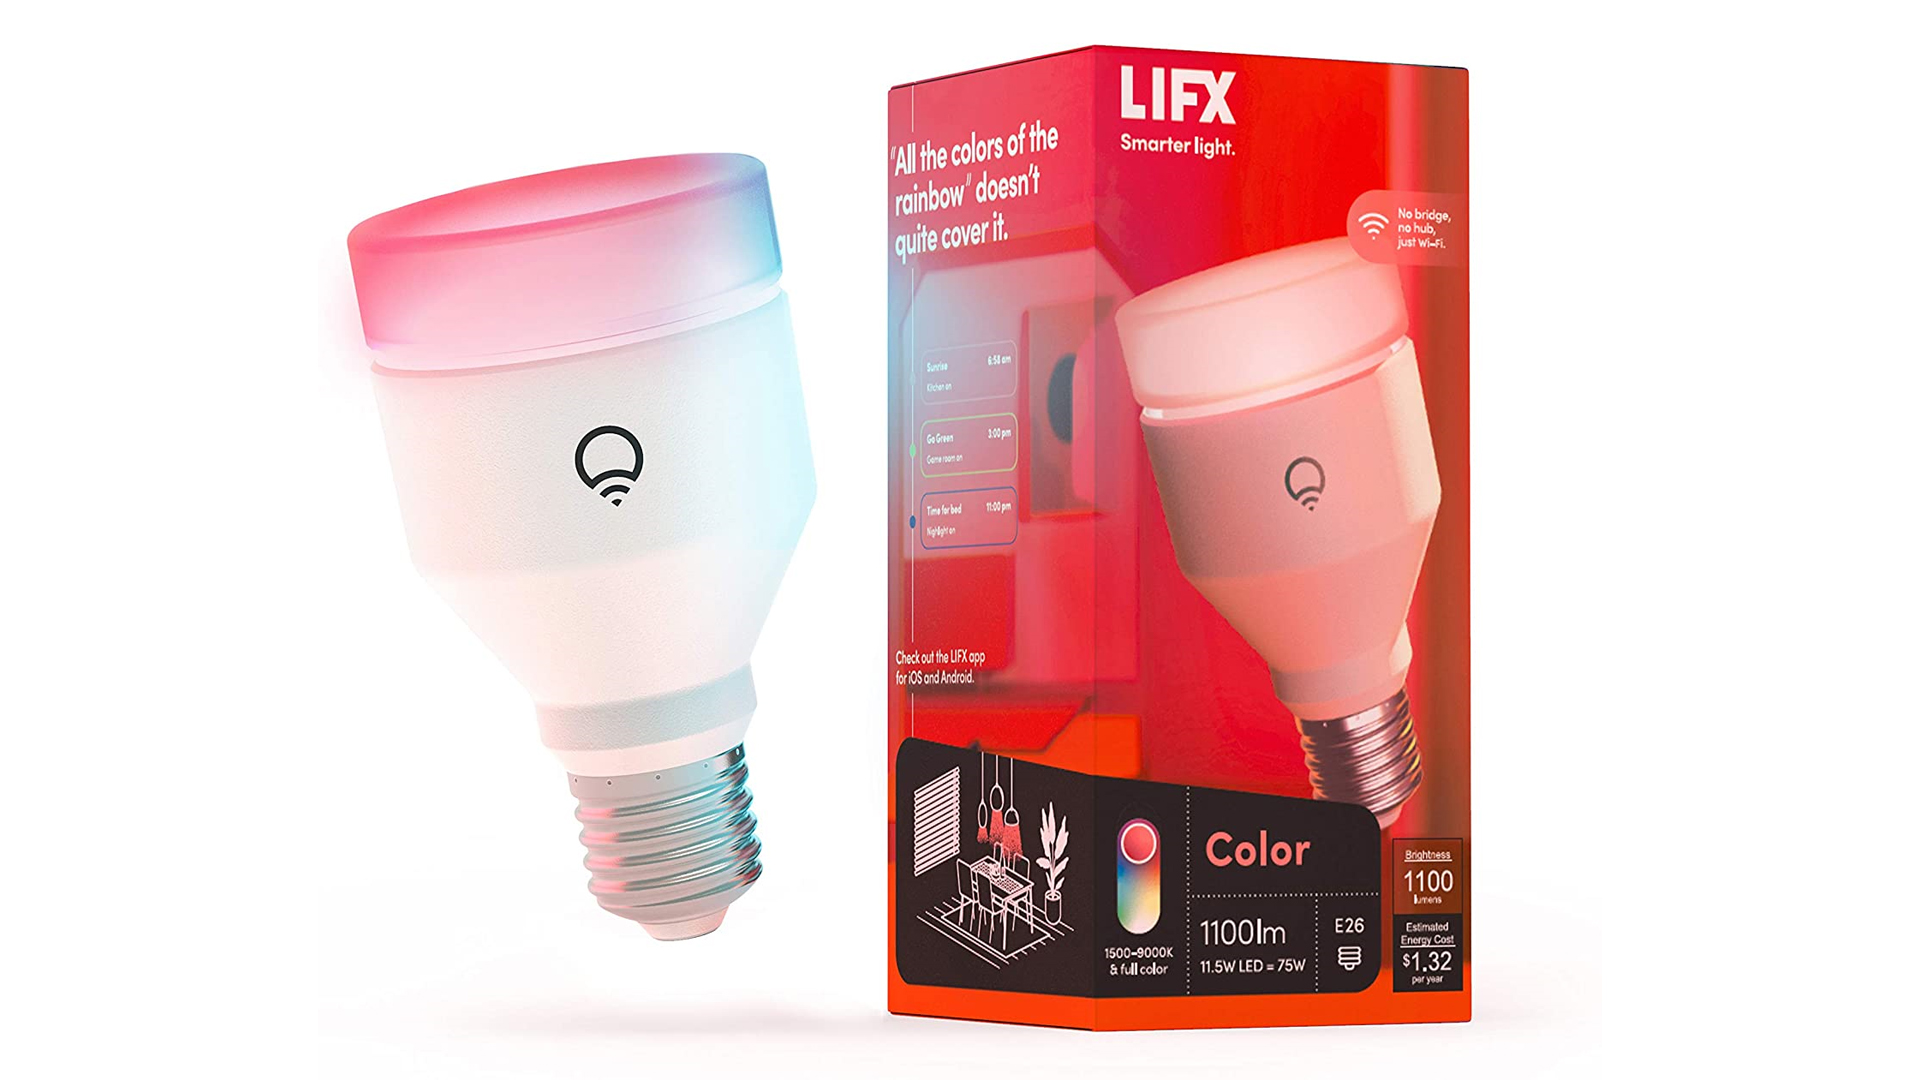 A LIFX Color 1100 lumen bulb